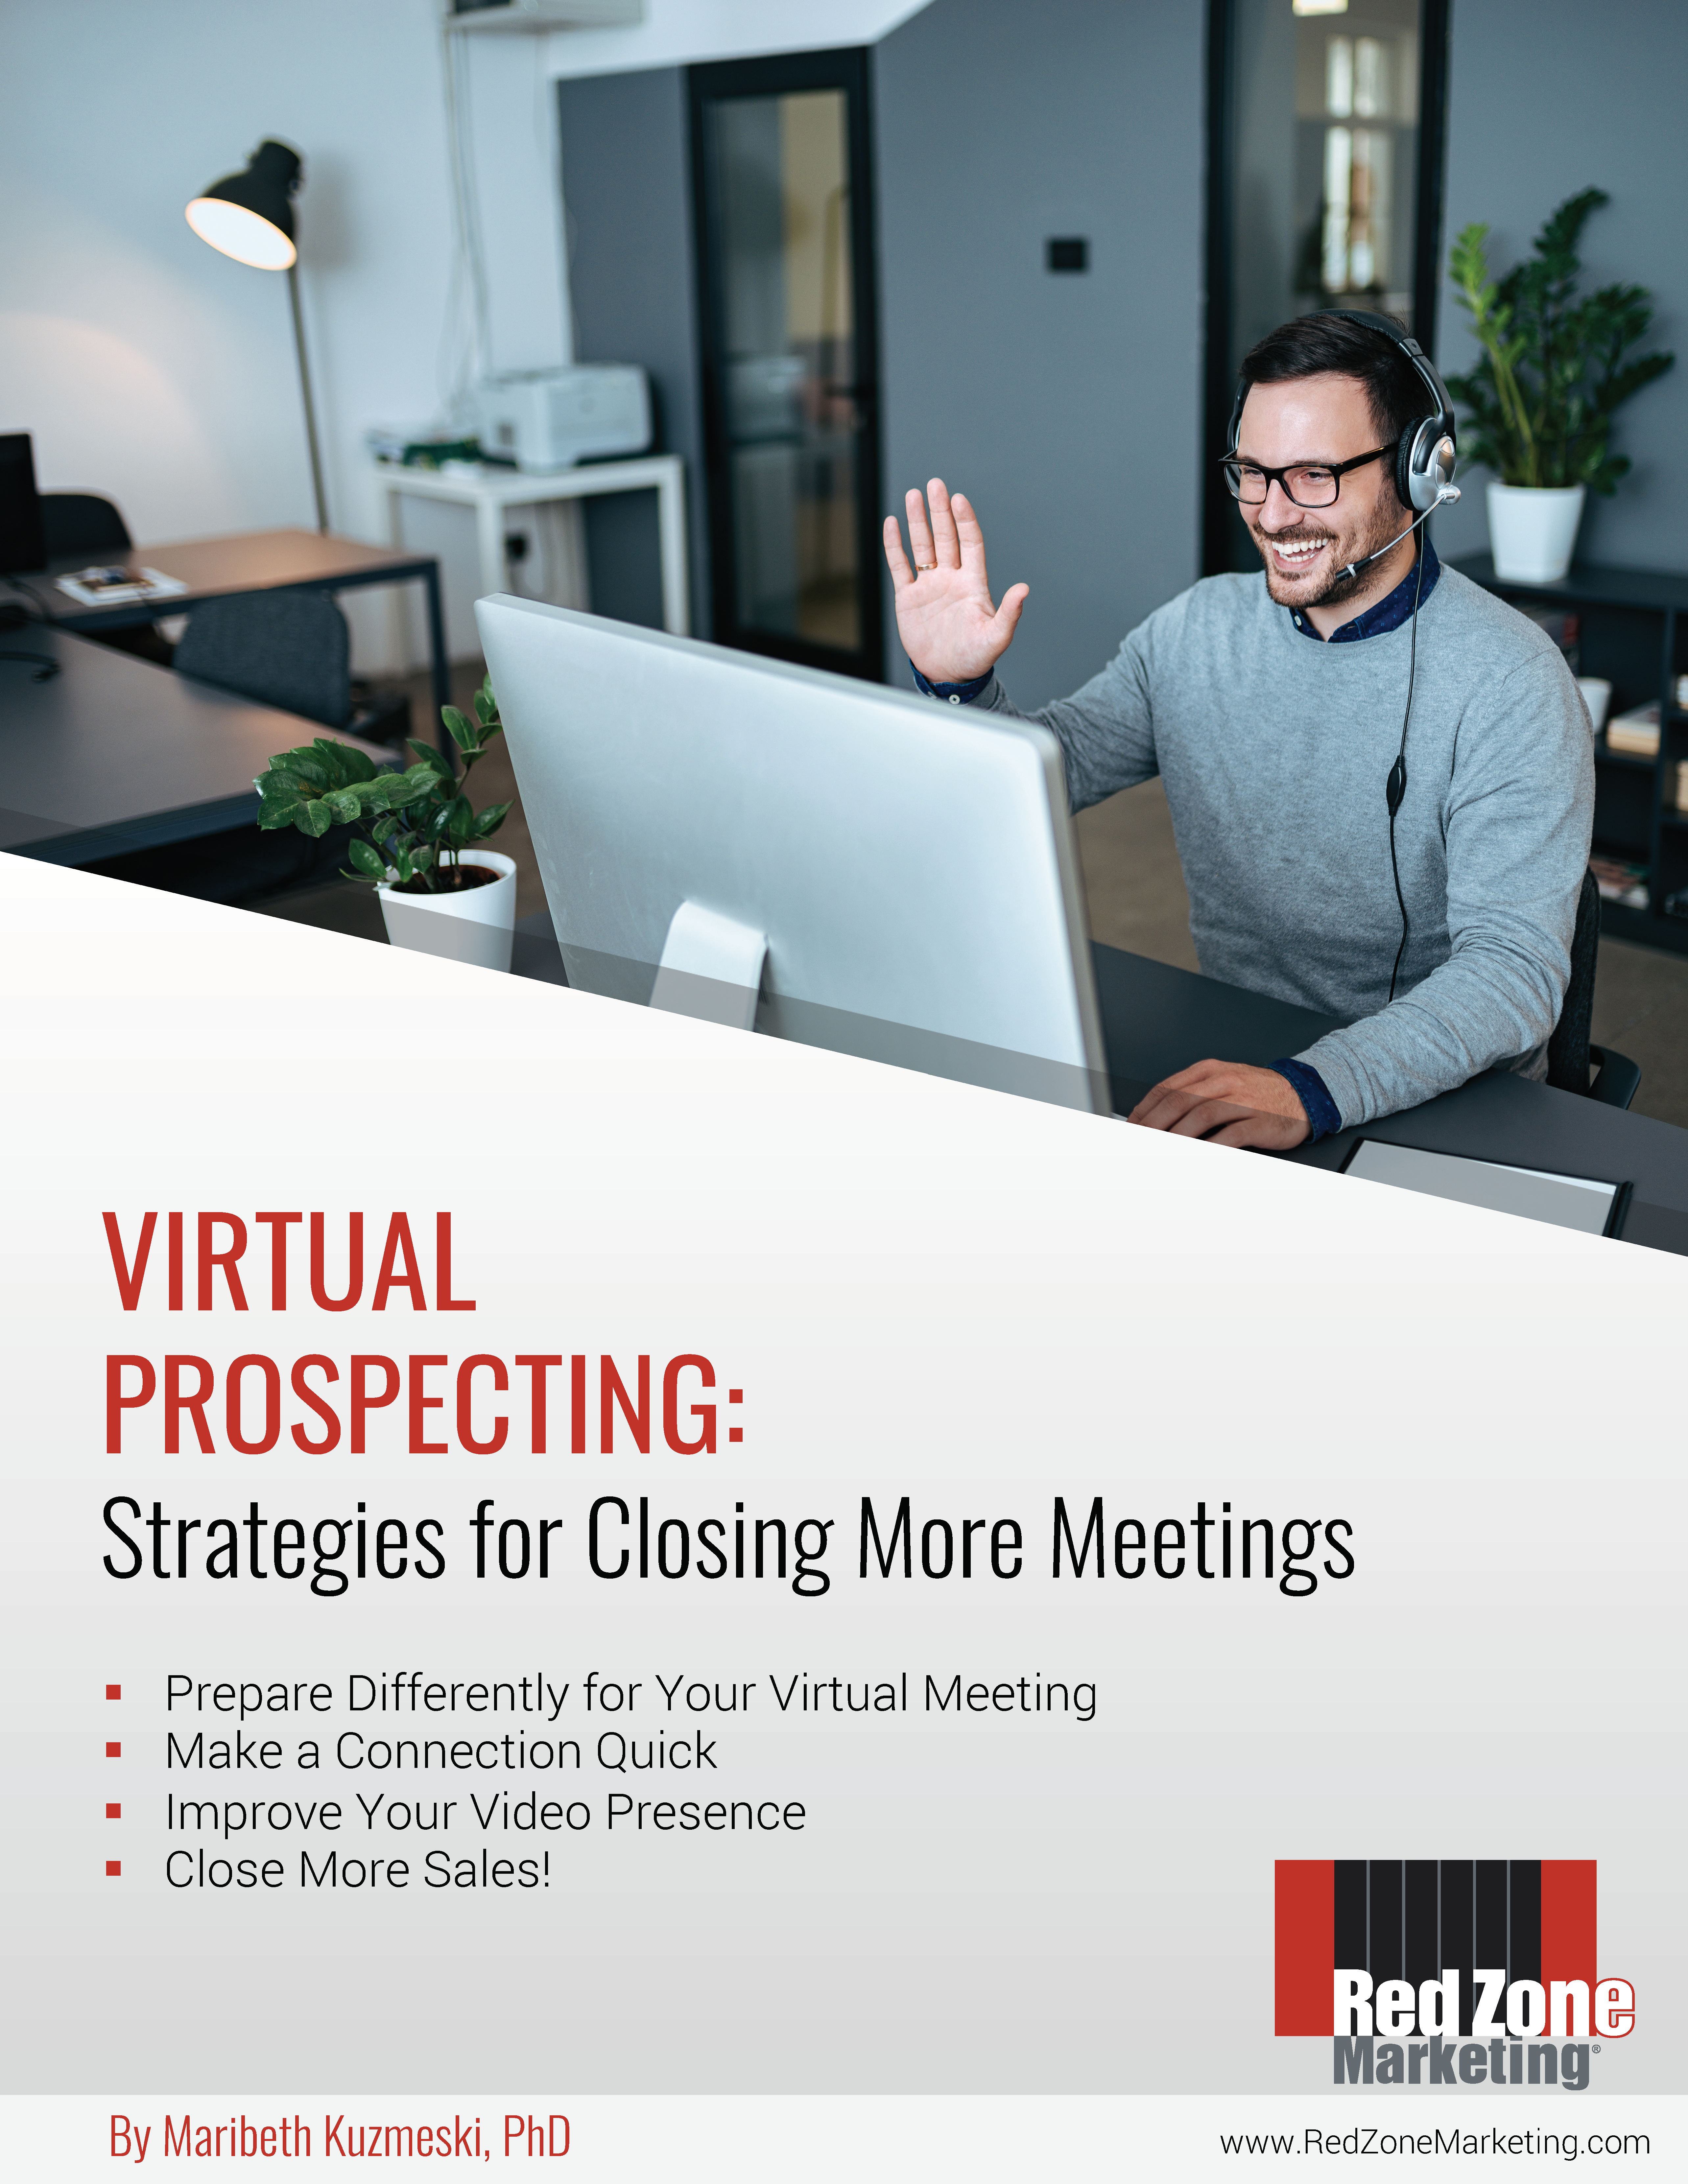 Strategies for closing more meetings